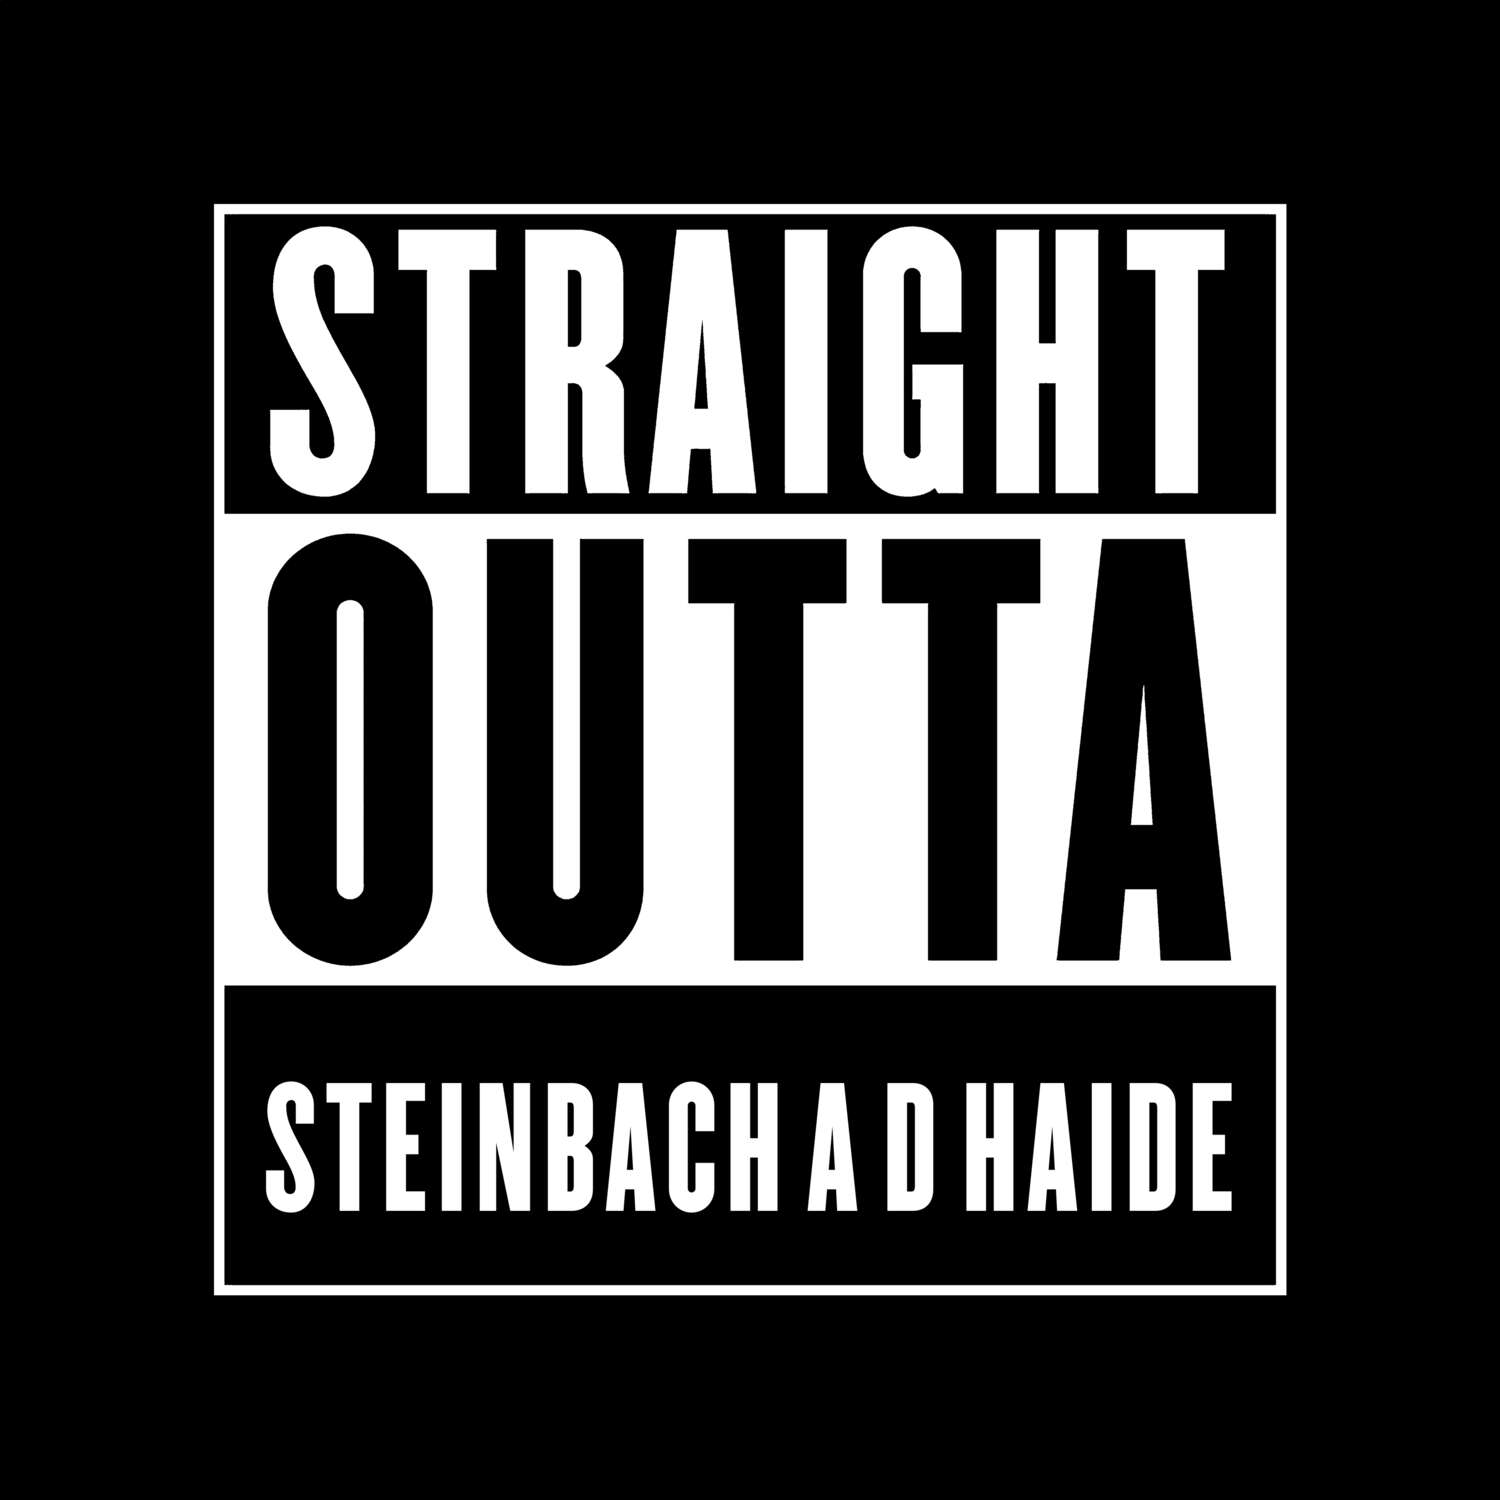 Steinbach a d Haide T-Shirt »Straight Outta«